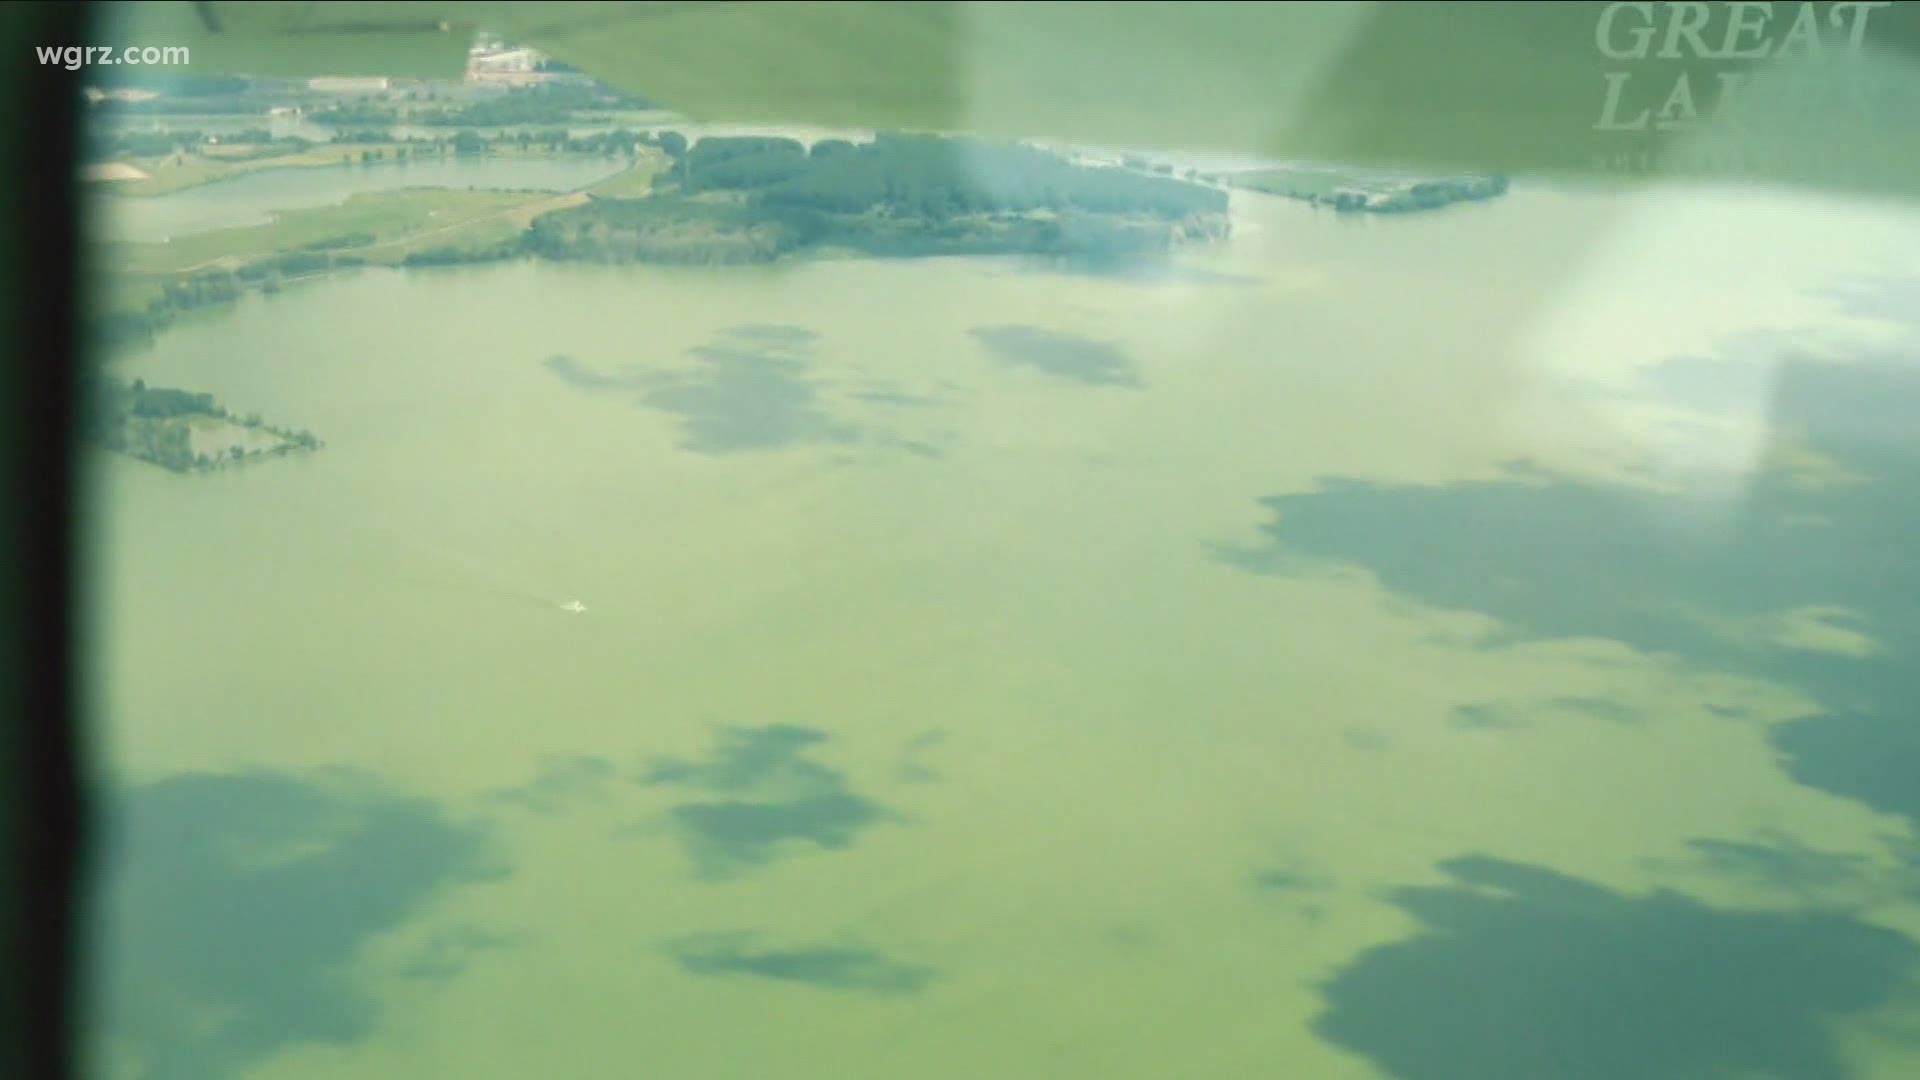 Businesses concerned over Lake Erie algae